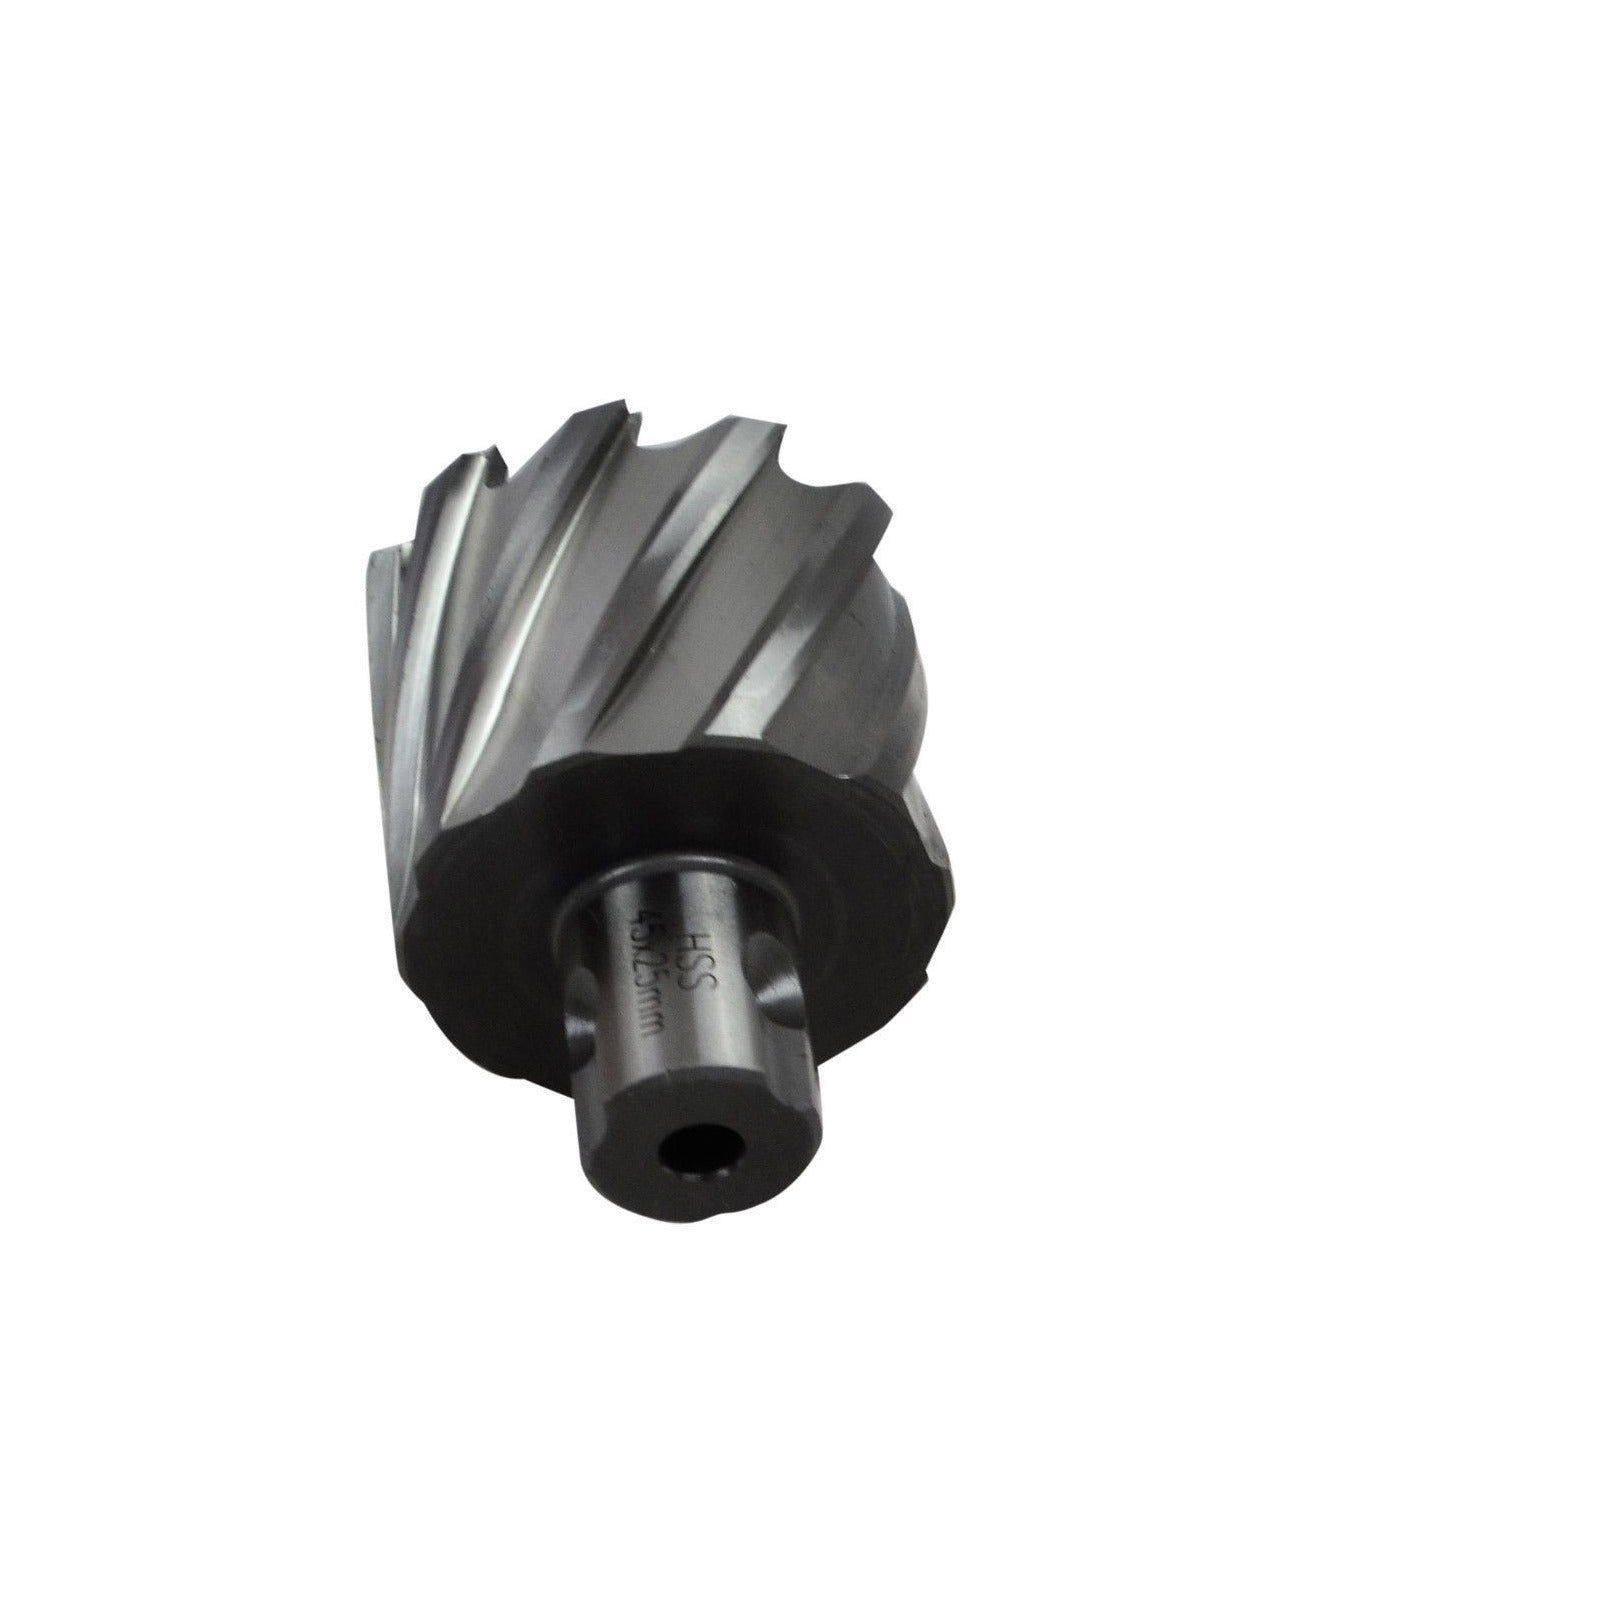 45x25 mm HSS Annular Broach Cutter ; Rotabroach Magnetic Drill ; Universal Shank